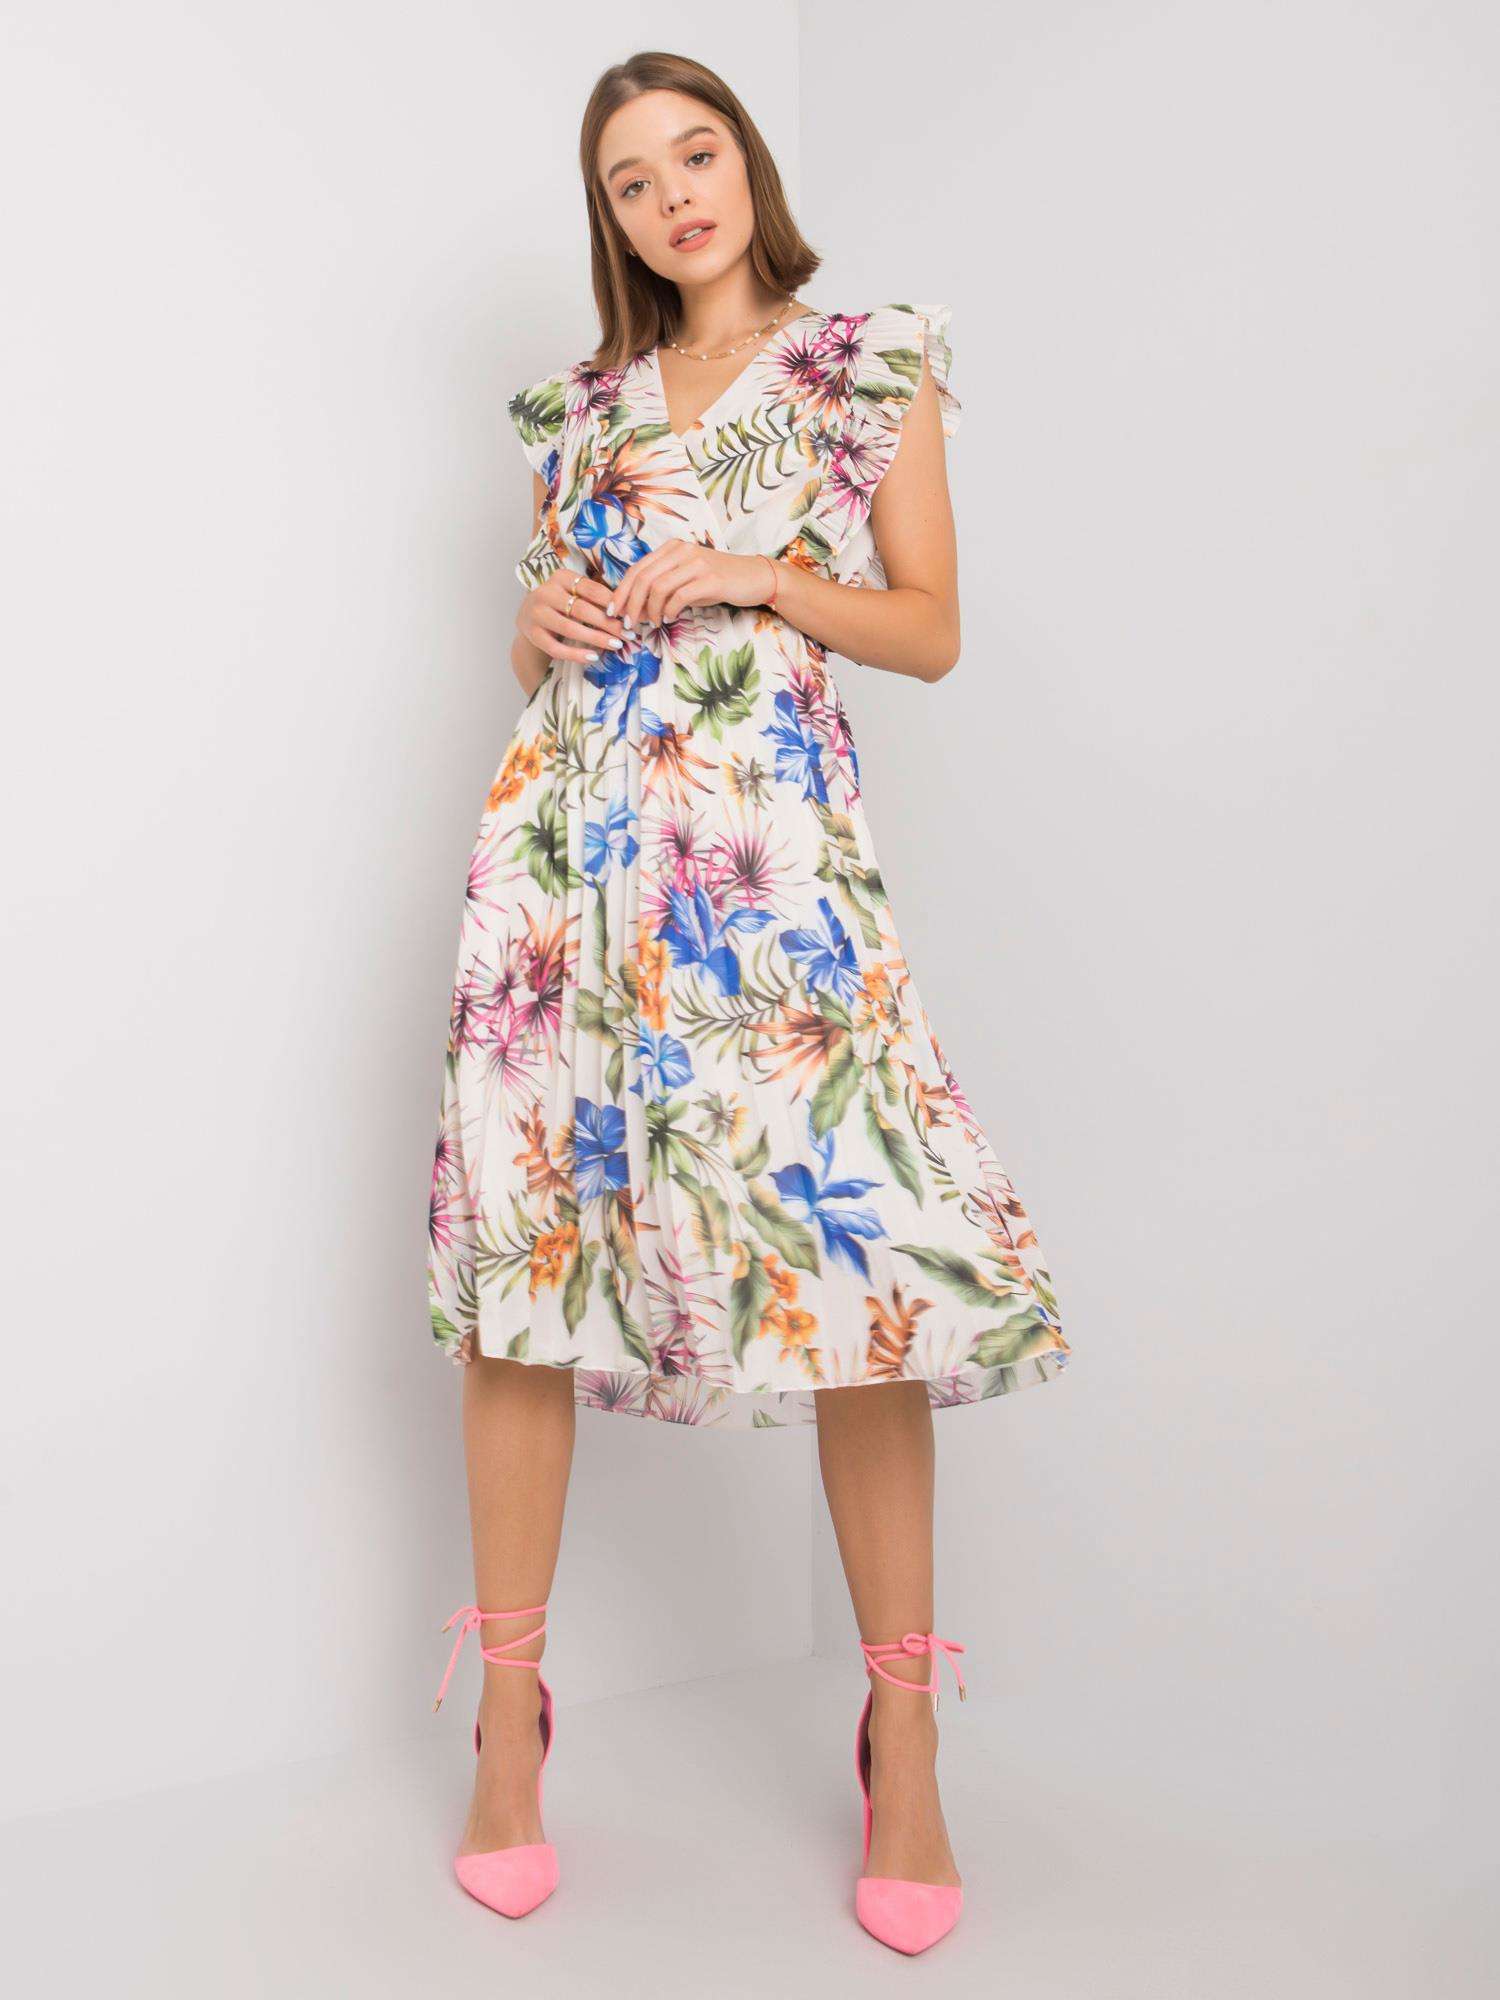 V-Neck Ruffle Sleeveless Flower Dress Women's BENNYS 